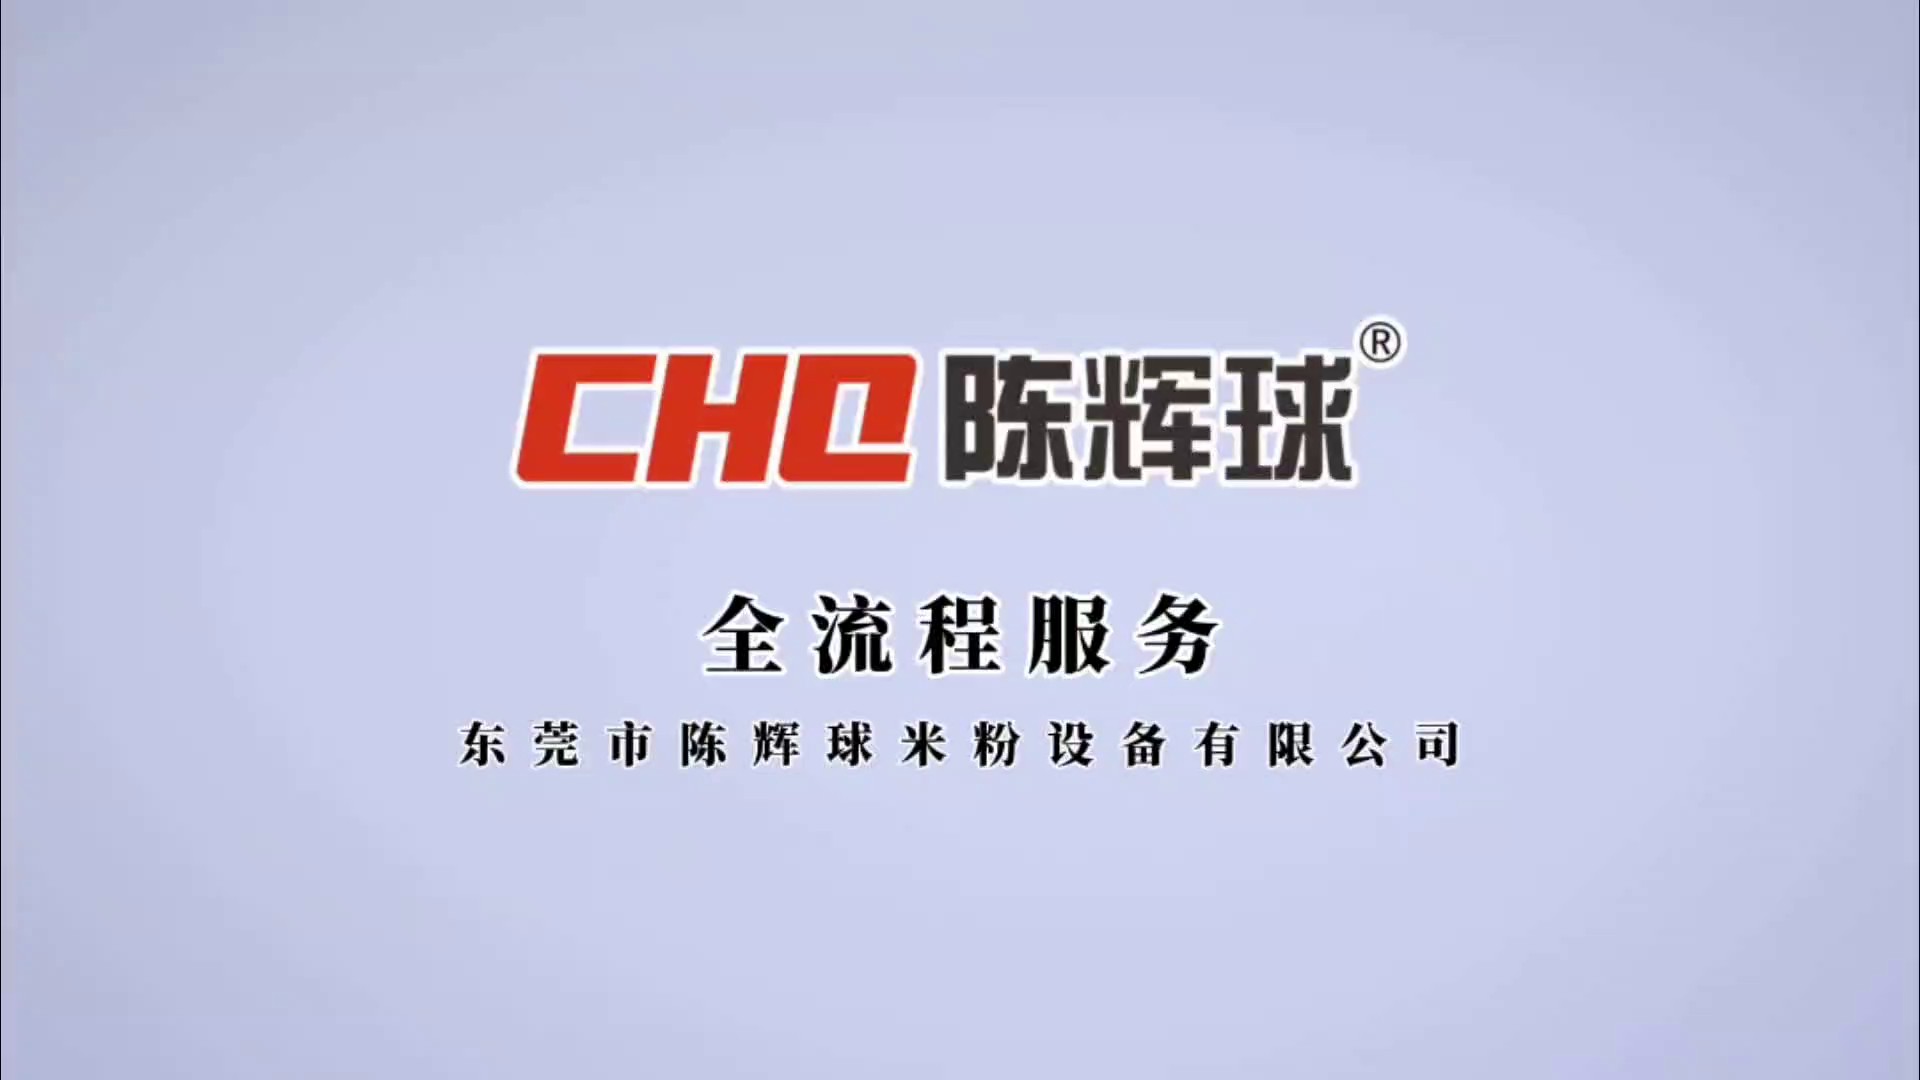 福建CHQ600自熟米粉生产线价格咨询,CHQ600自熟米粉生产线